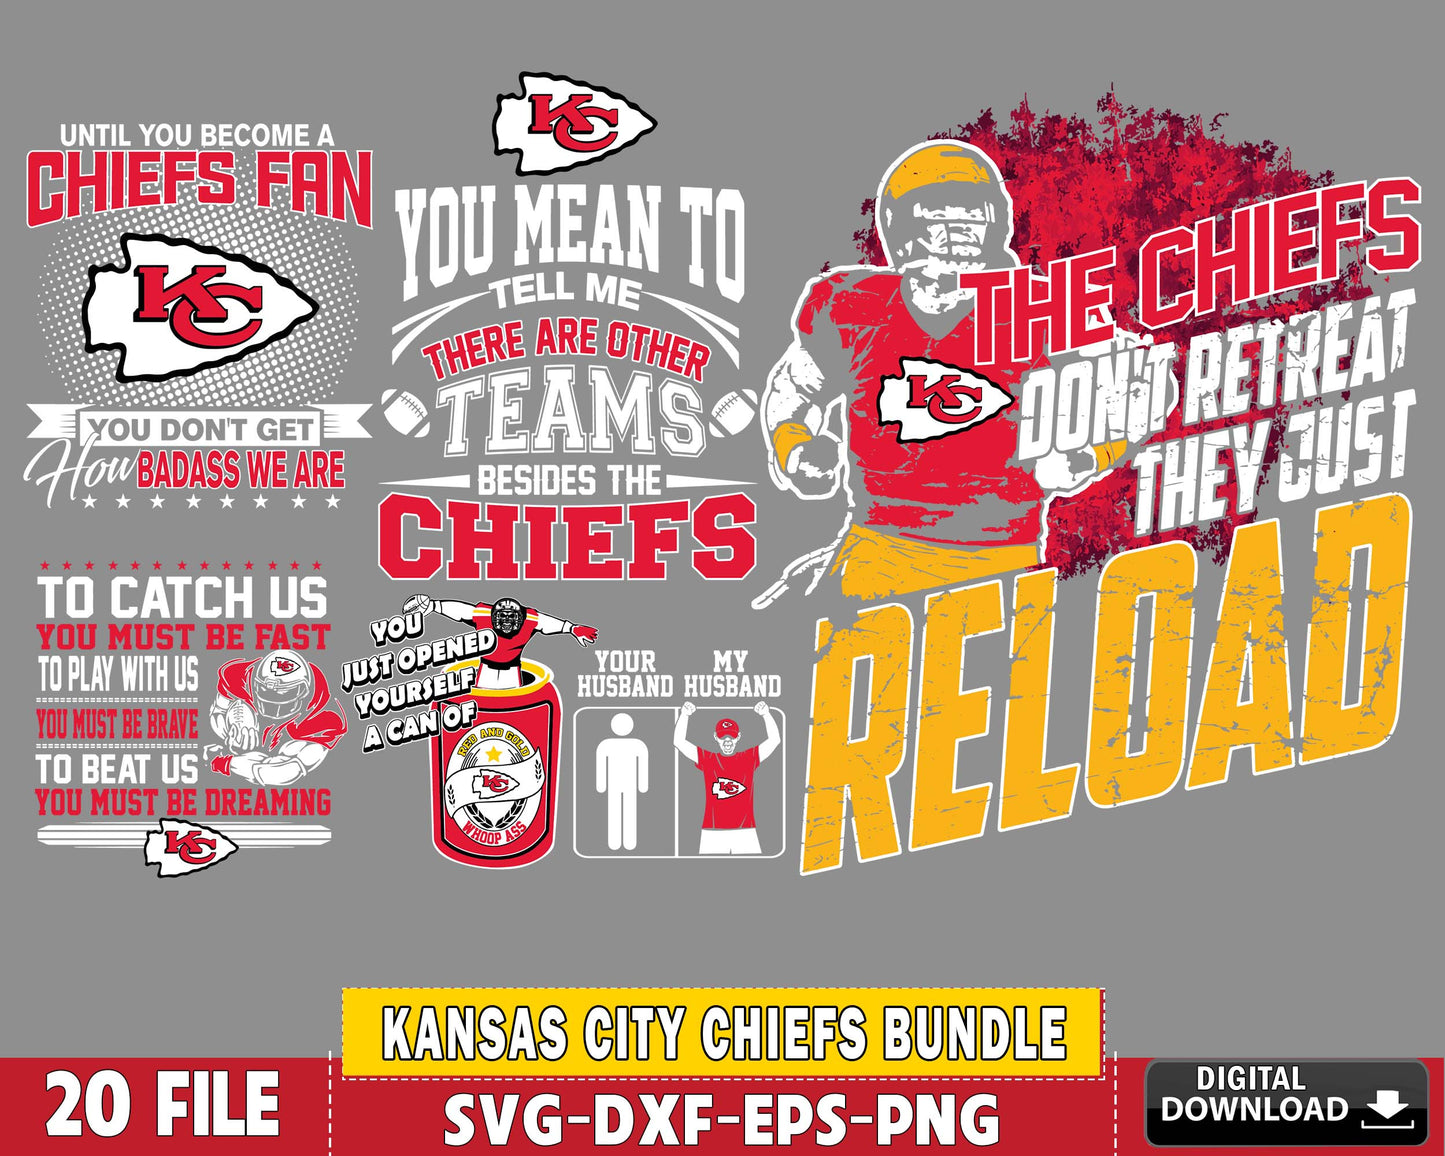 Kansas City Chiefs Bundle svg ,20 file Kansas City Chiefs svg, Nfl svg,superbowl Bundle Digital Cut Files ,  super bowlsvg eps dxf png file, for Cricut, Silhouette, digital download , file cut